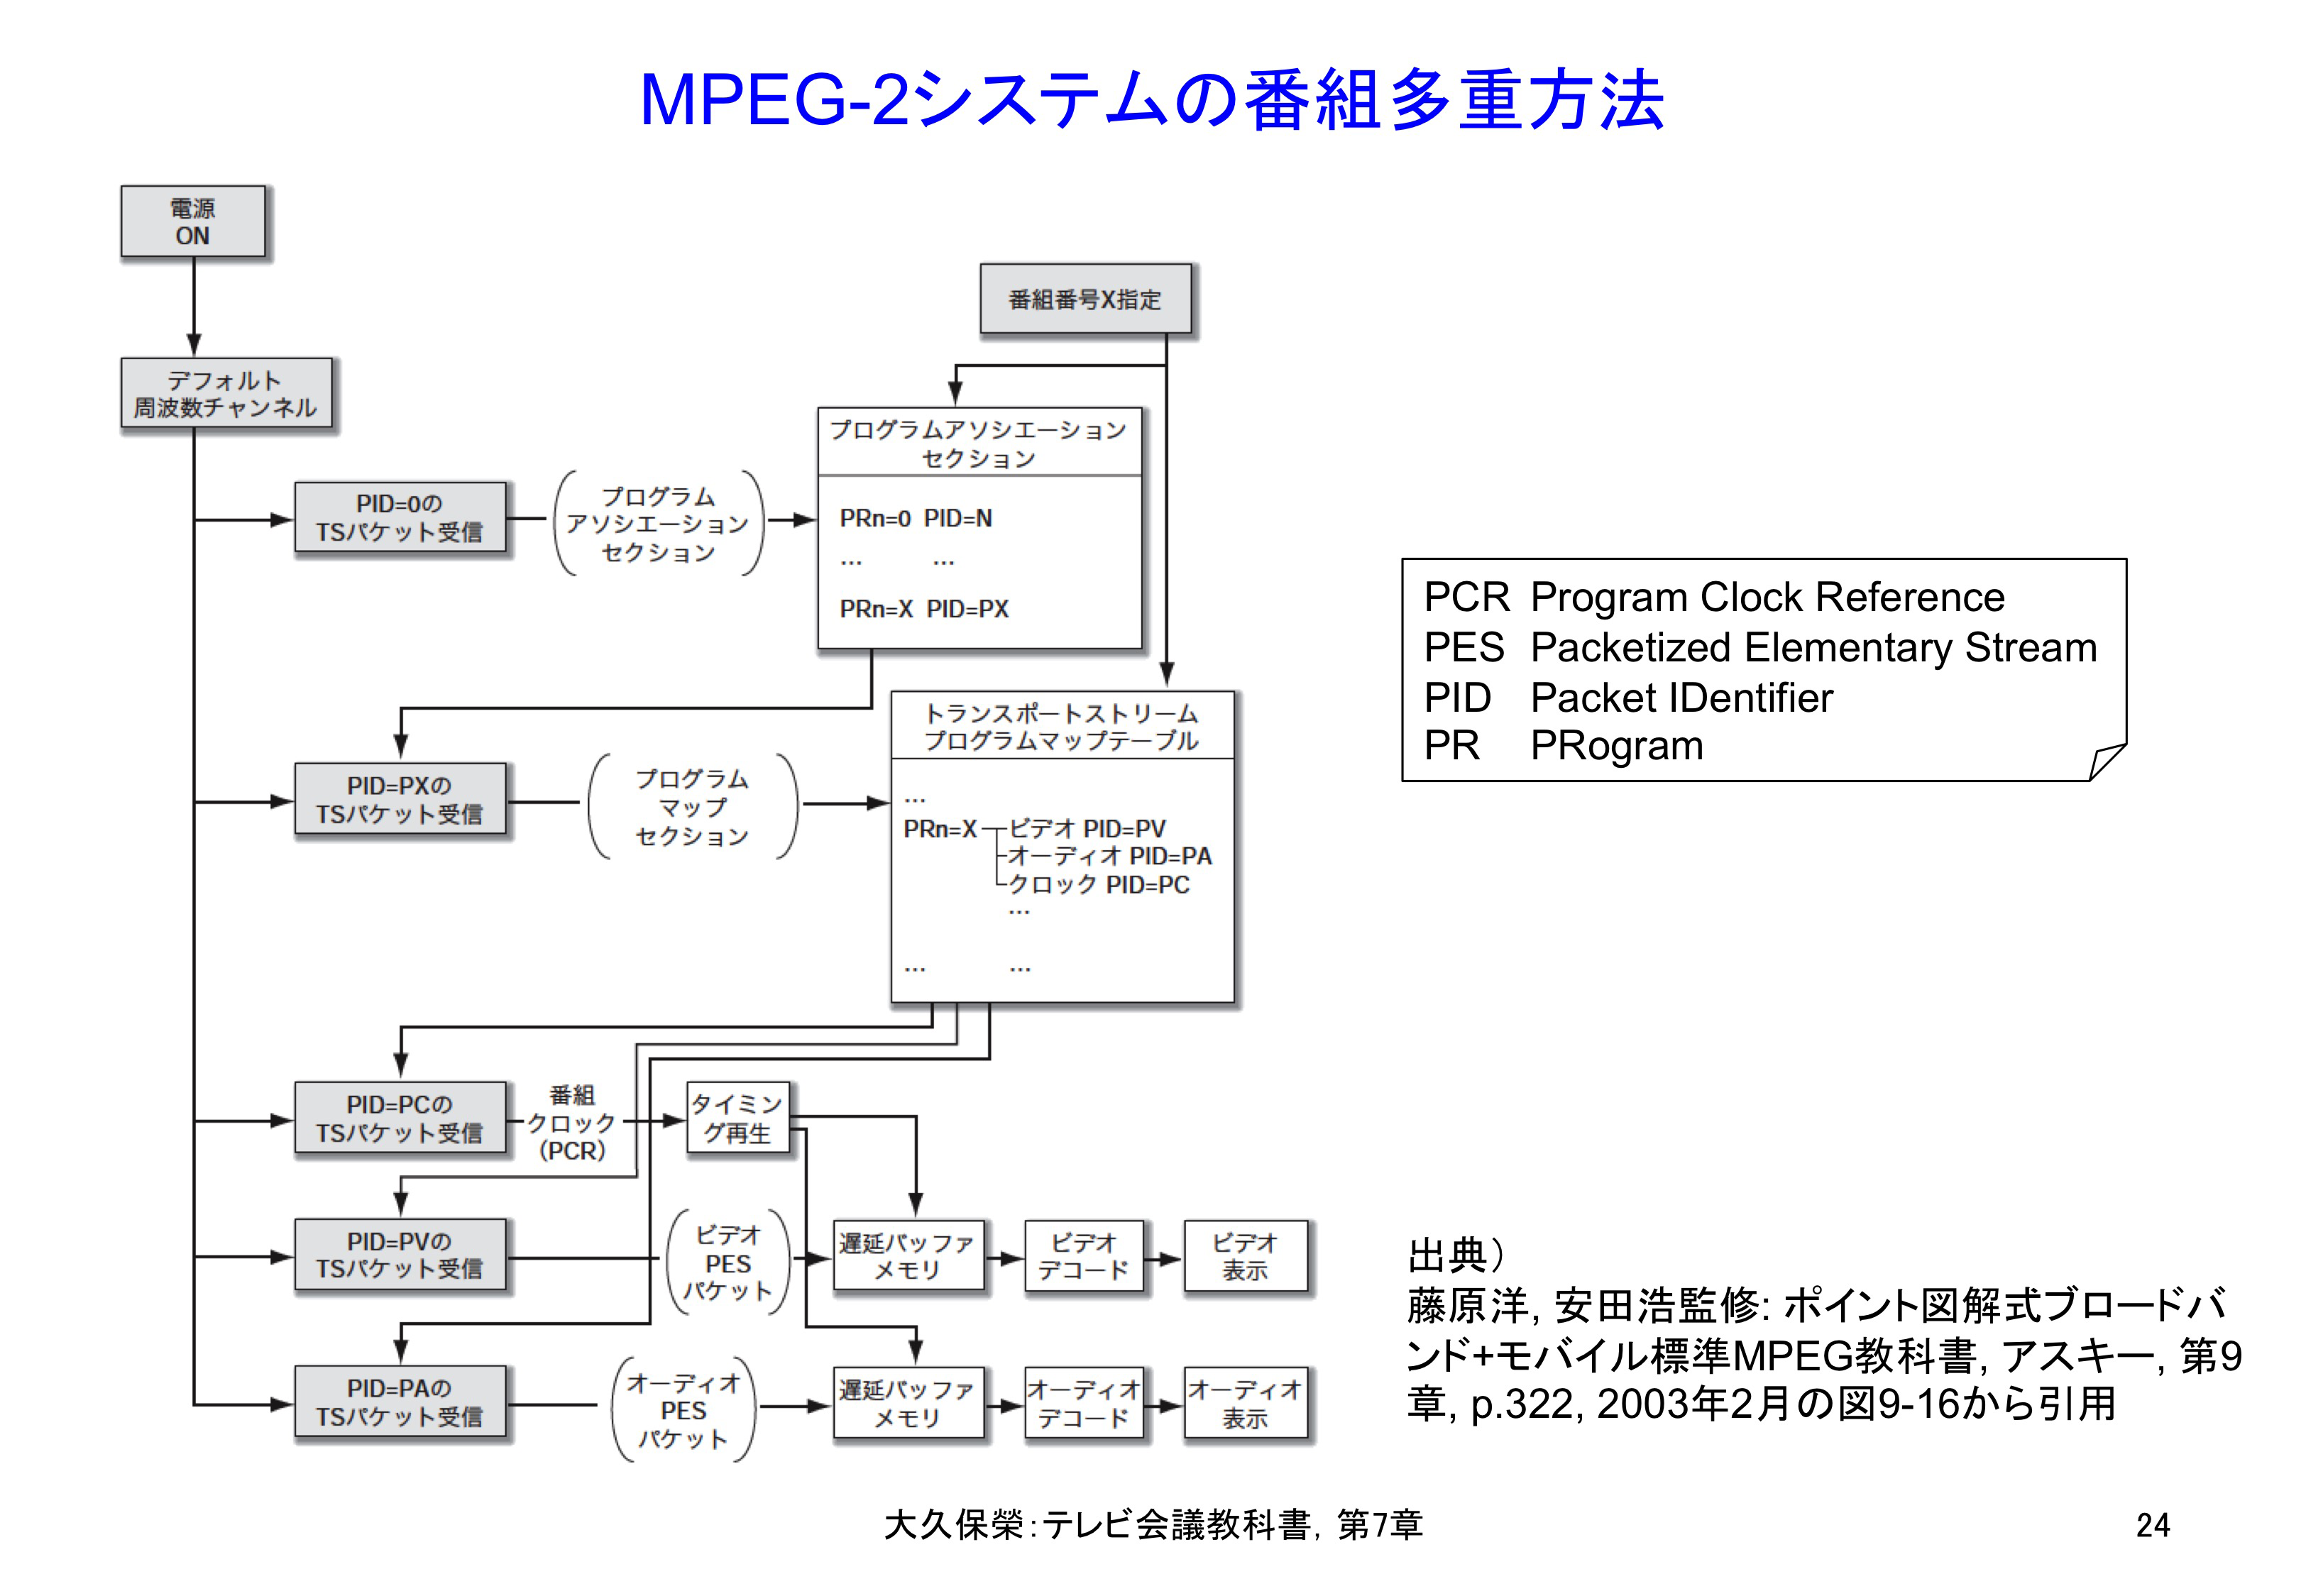 図C7-1 MPEG-2システムの番組多重方法